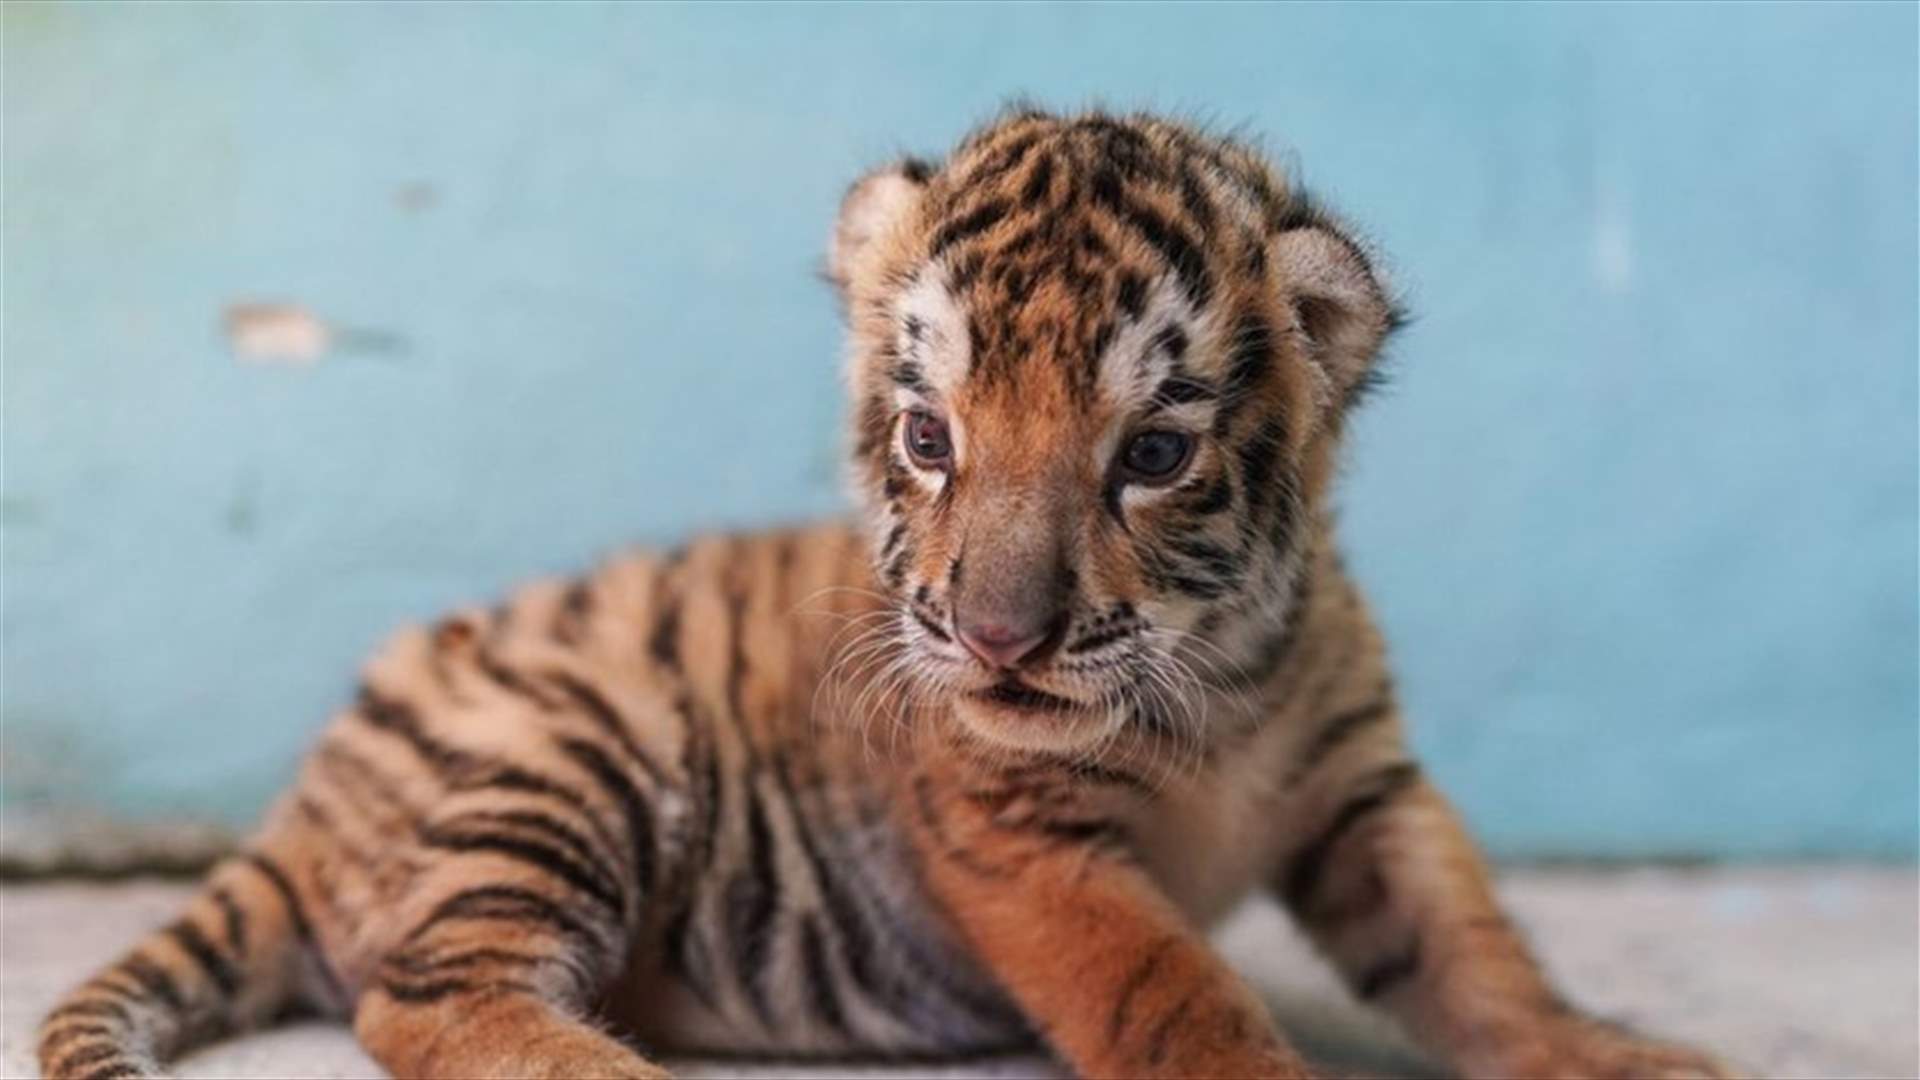 في حديقة حيوان كوبية... ولادة خامس نمر بنغالي مهدّد بالانقراض